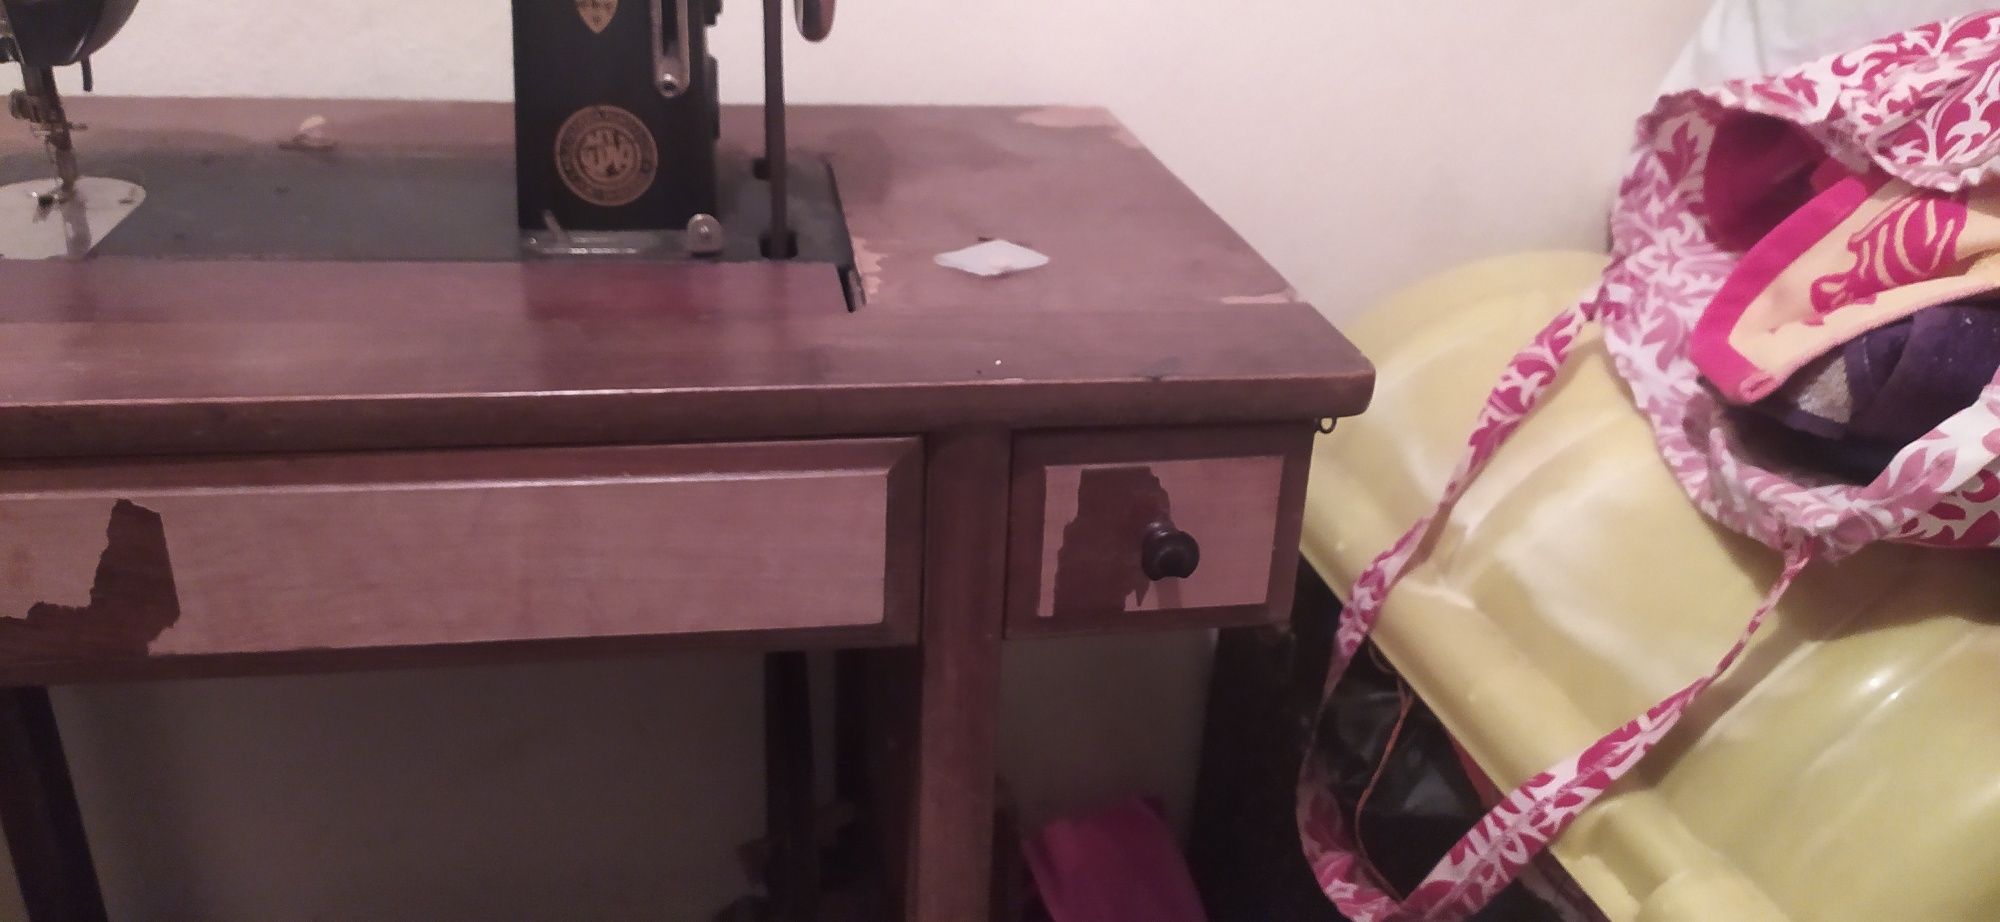 Maquina de costura antiga OLIVA